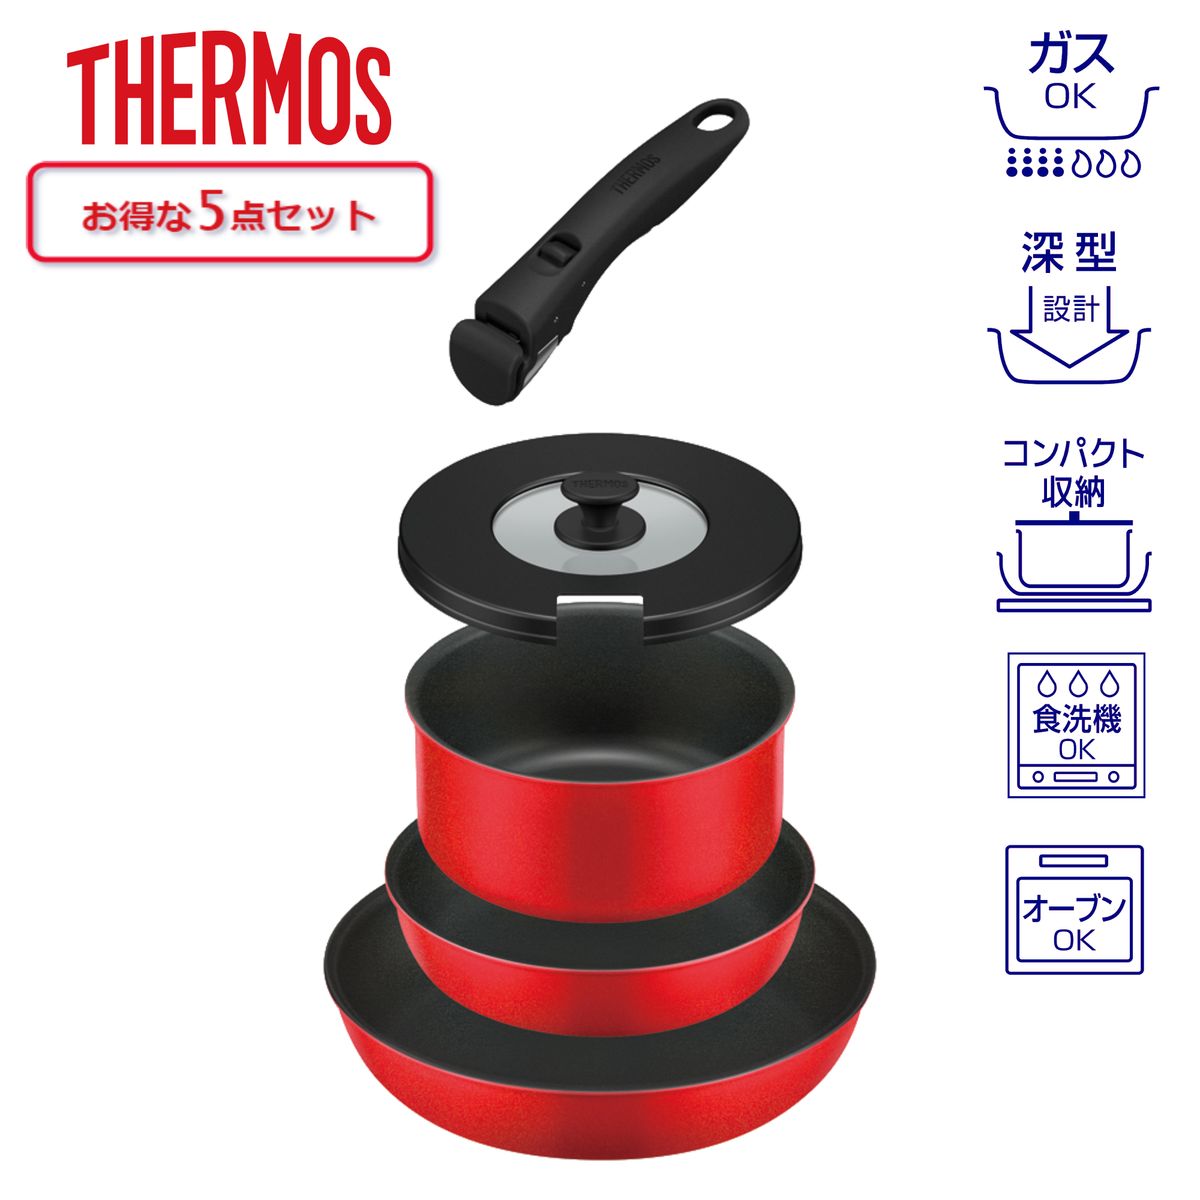 THERMOS 取っ手のとれるフライパン5点セット 蓋付 着脱式取っ手 ブライトレッド ガス火専用 食洗器対応